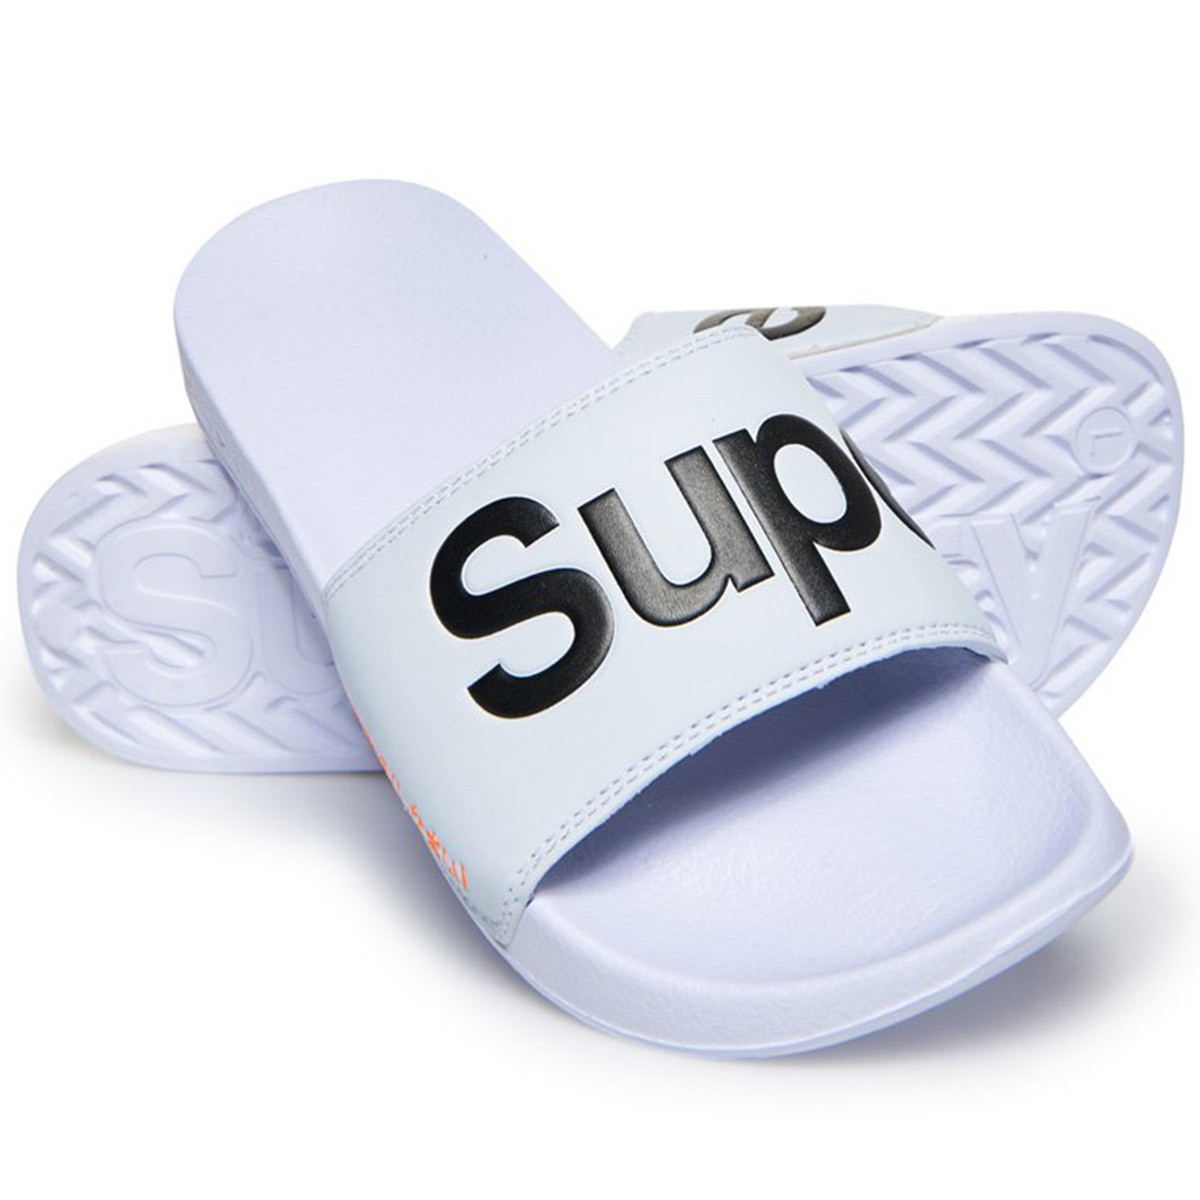 Superdry Pool papuče Spremna za leto: Evo gde možeš da pronađeš baš sve što ti je potrebno!